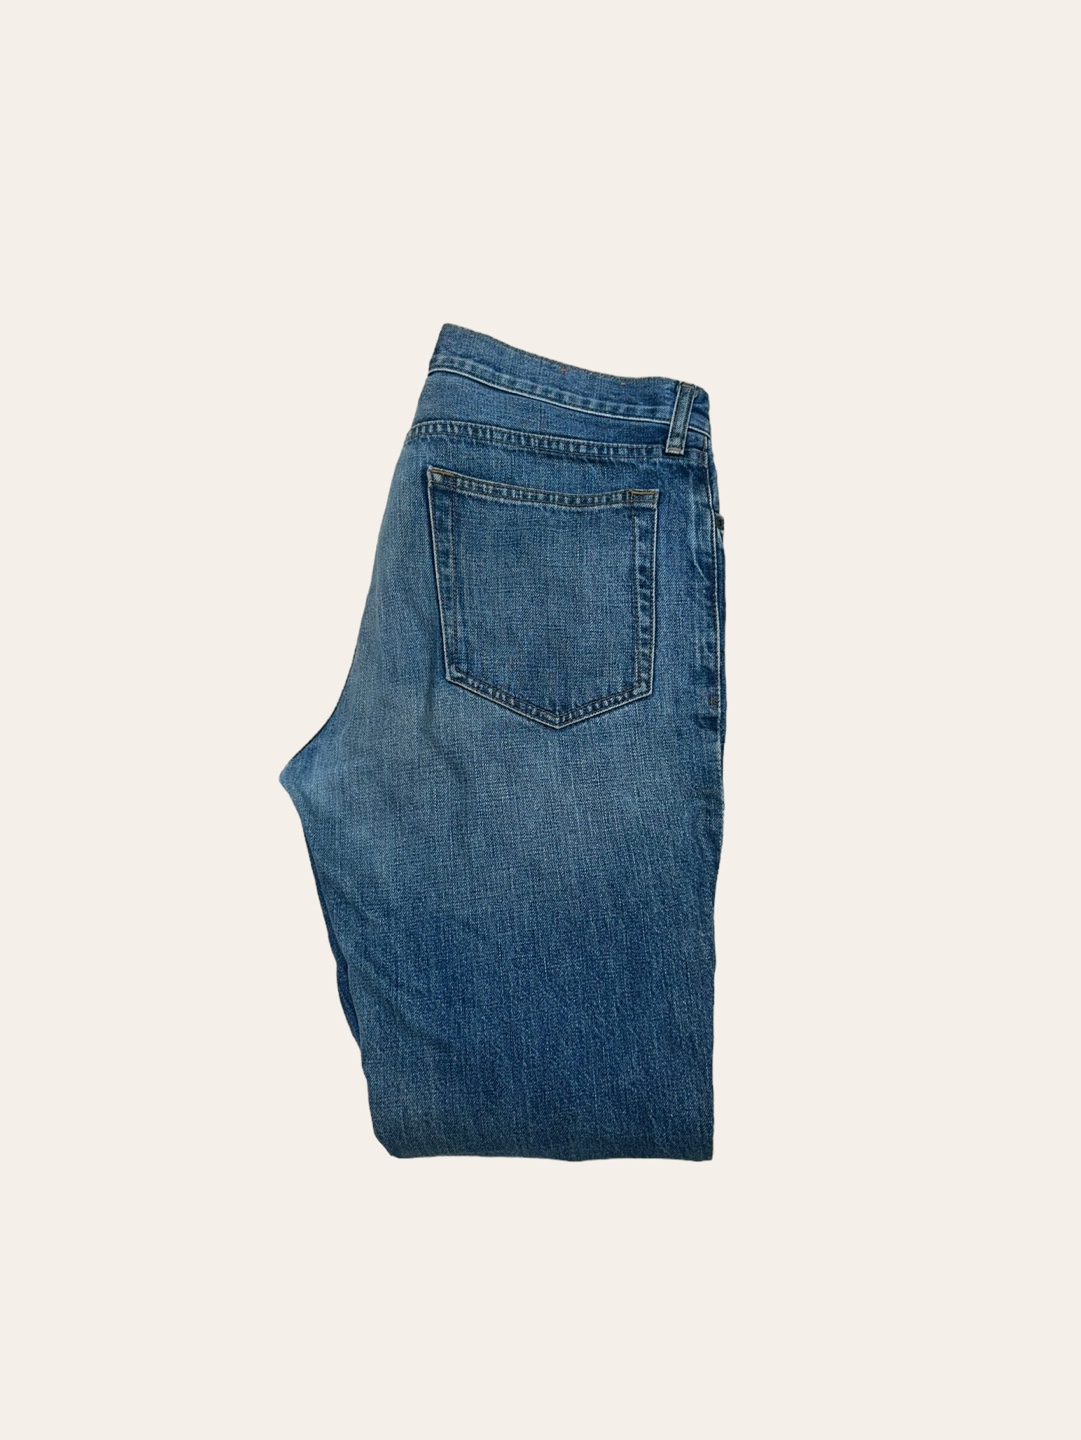 Jcrew denim washing jeans 32x32